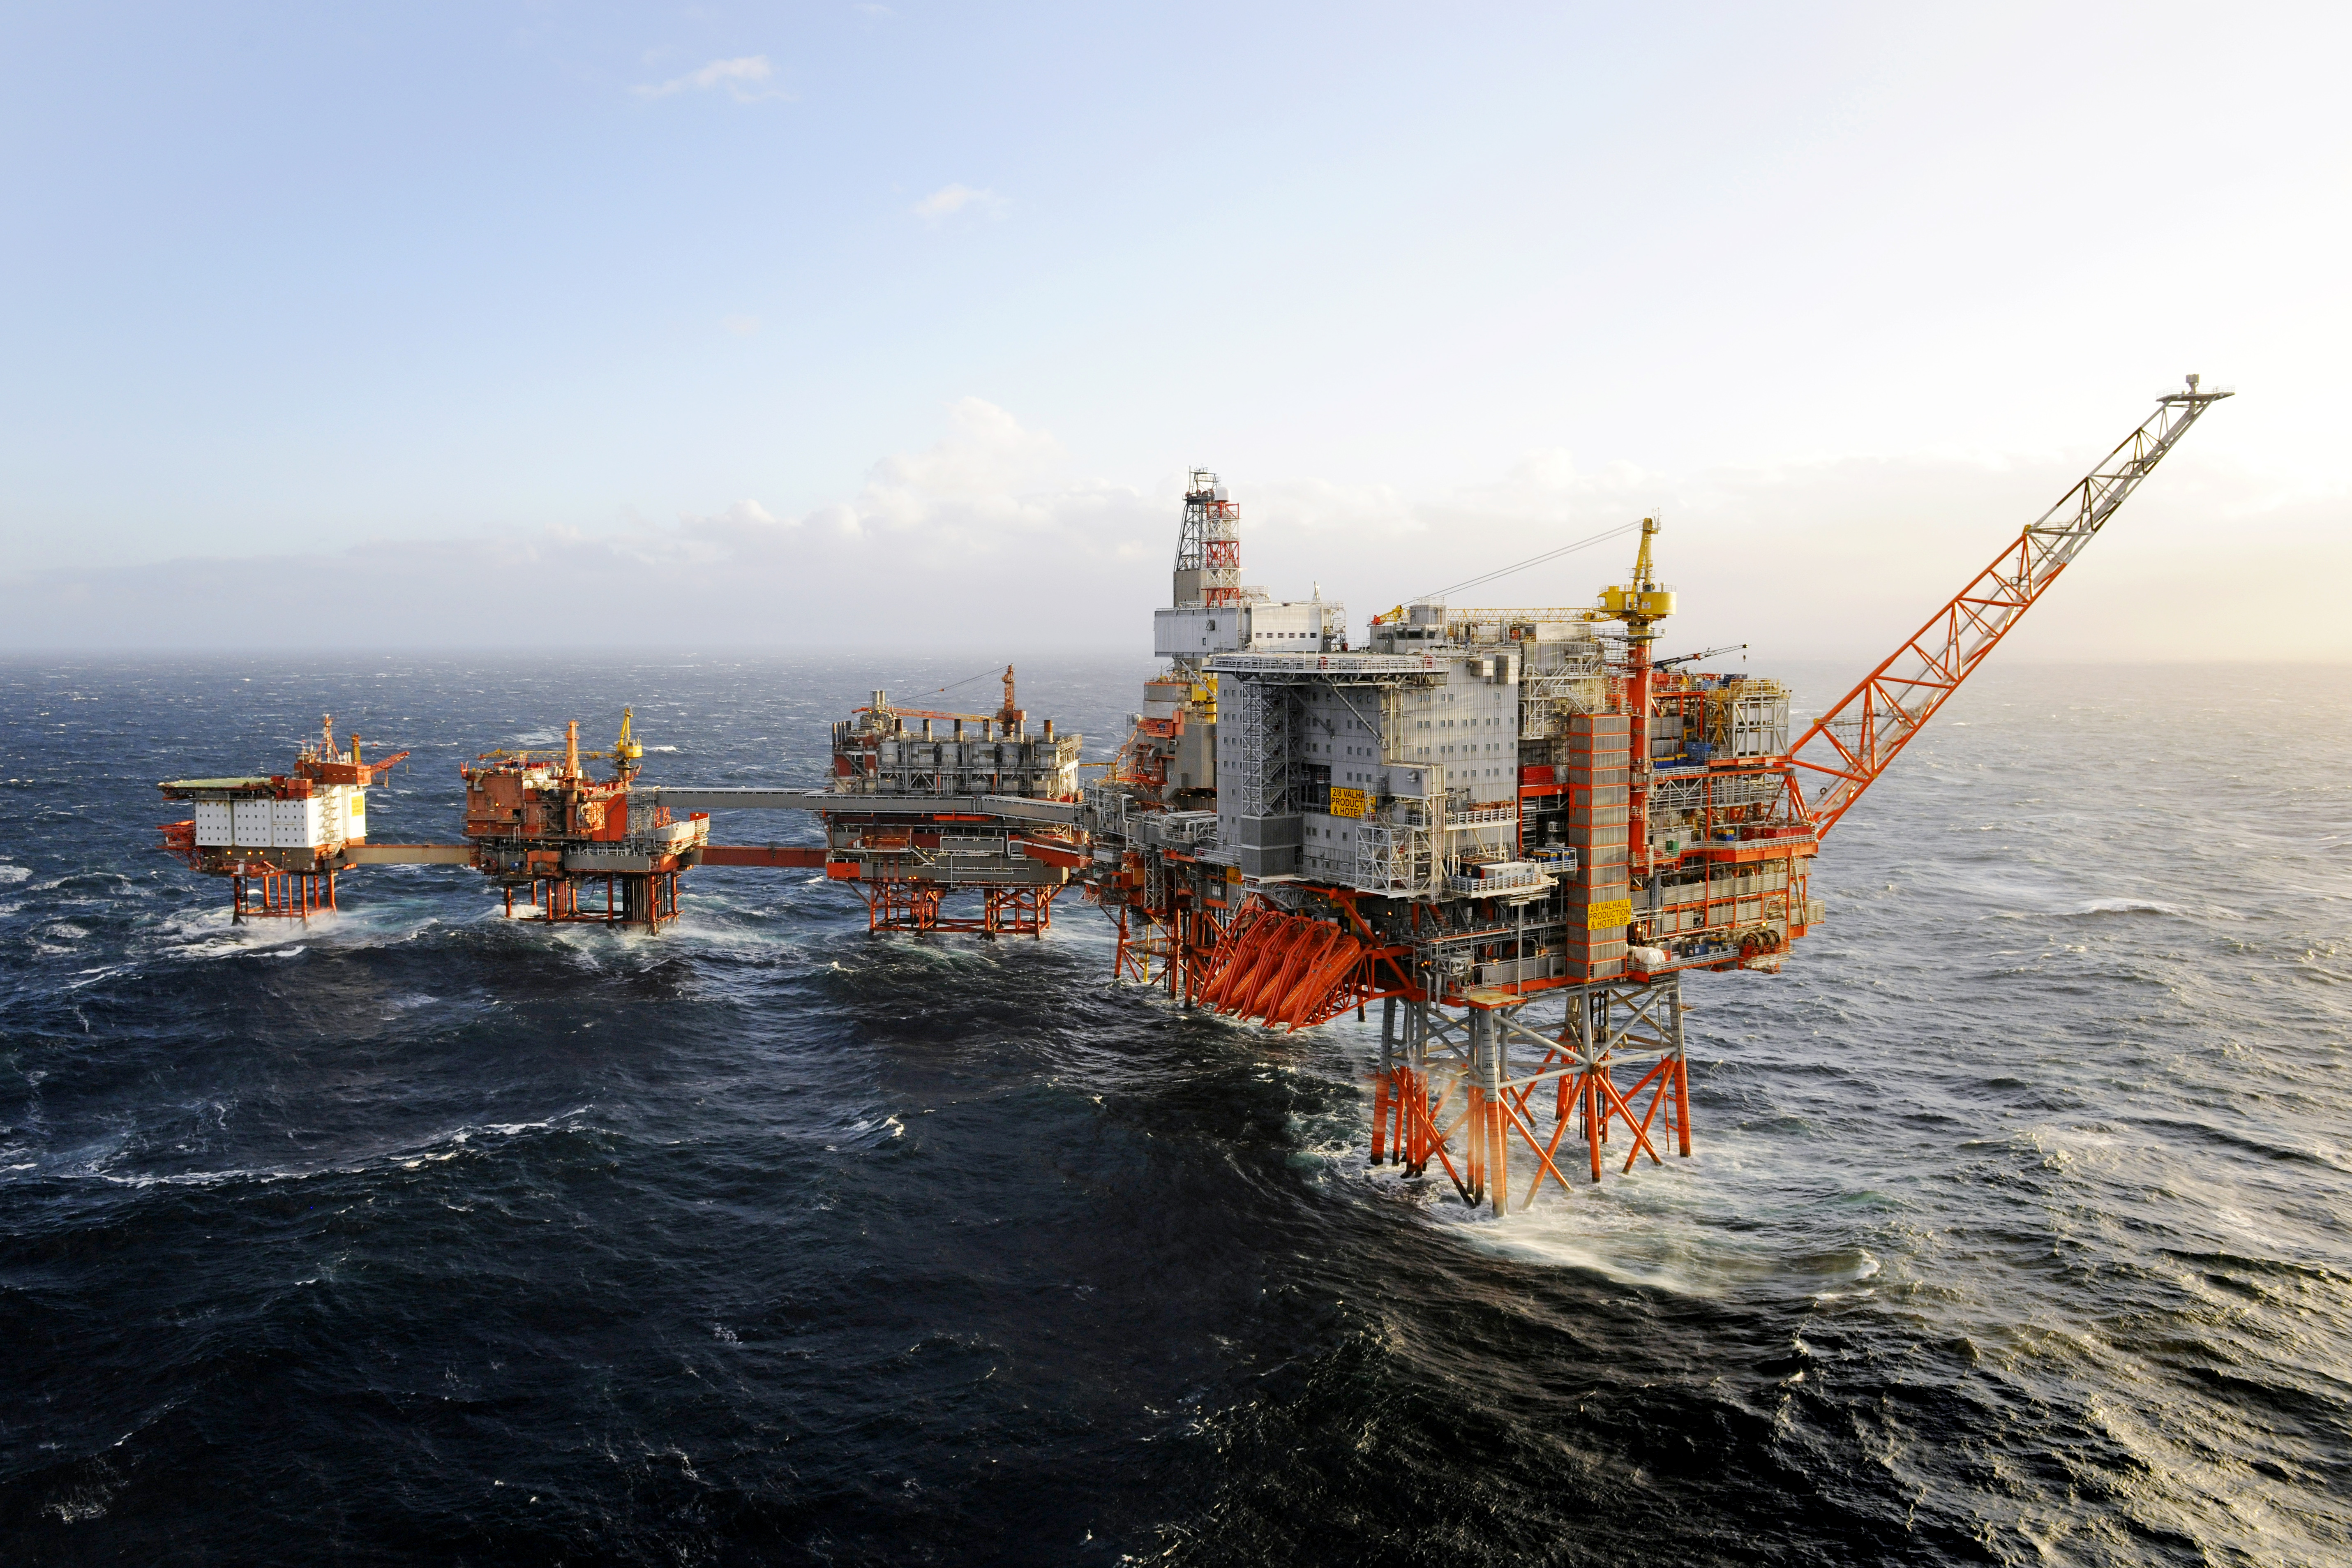 Собрать добычу. Нефтяная платформа "Дропнер" 1995. Хайберния нефтяная платформа. Нефтедобыча в Северном море. Баренцево море нефтедобыча.